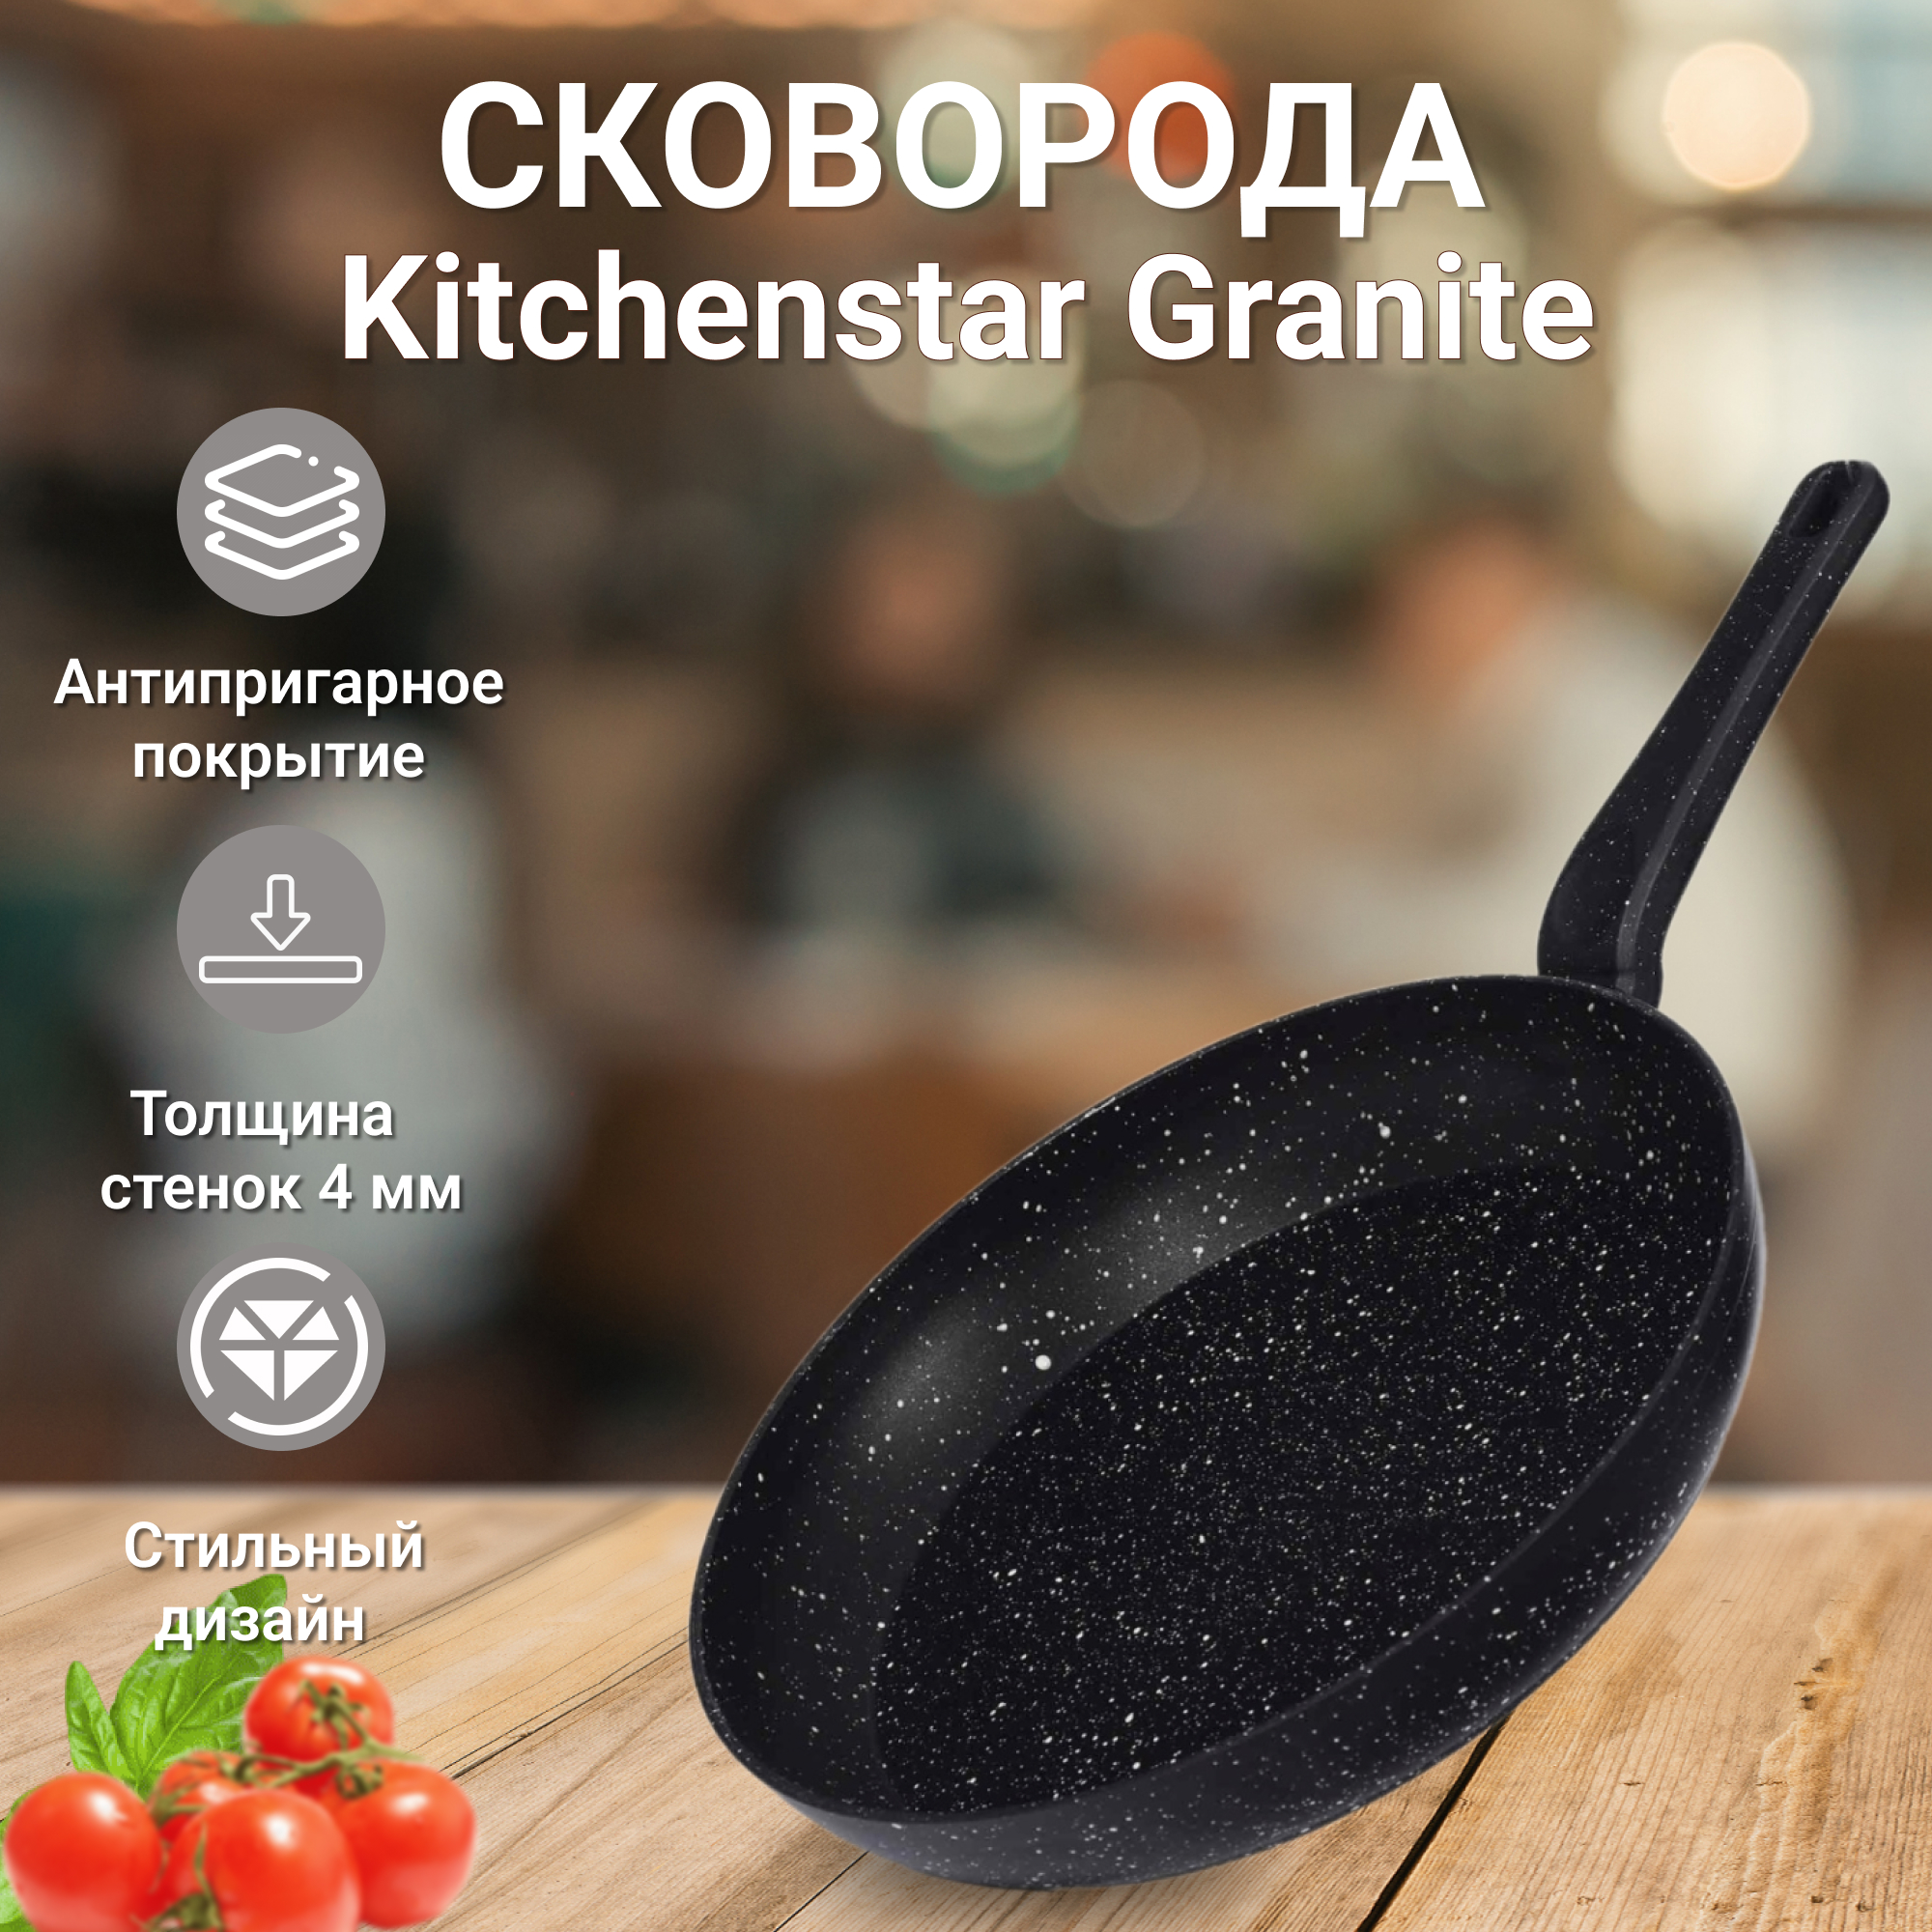 Сковорода Kitchenstar Granite черная 28 см, цвет черный - фото 2